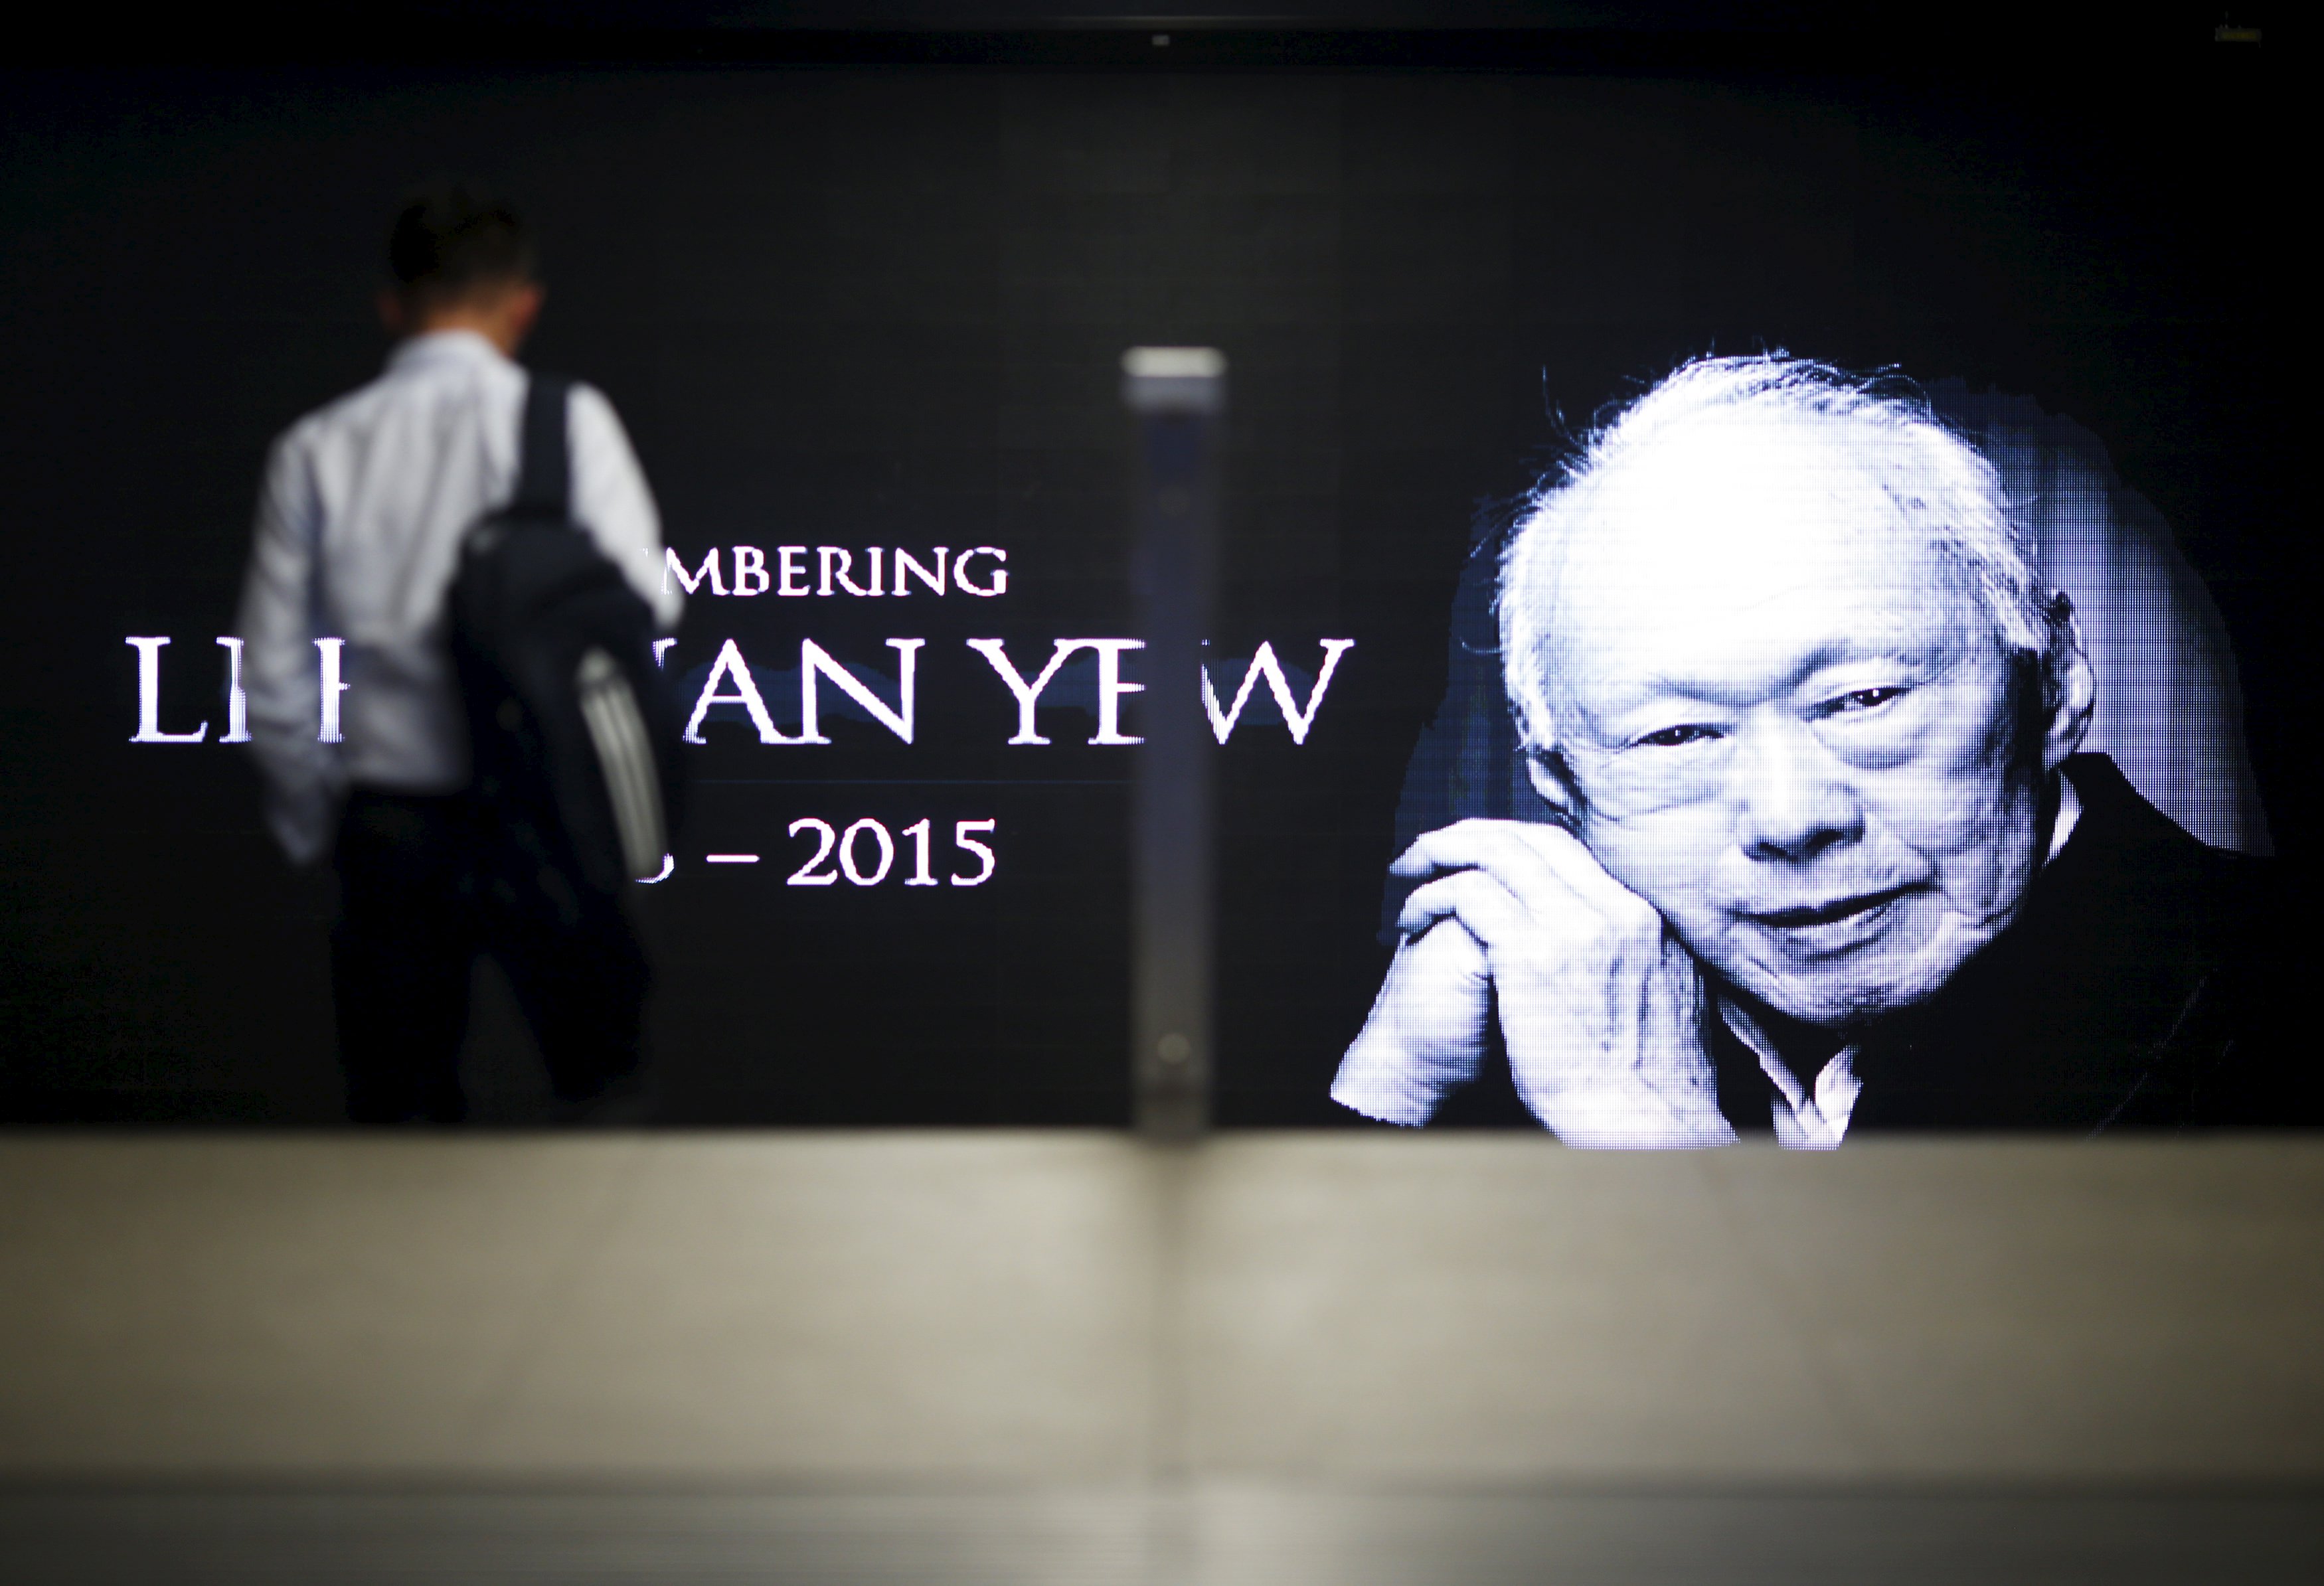 US expert talks Lee Kuan Yew leadership, post-Lee Singapore future